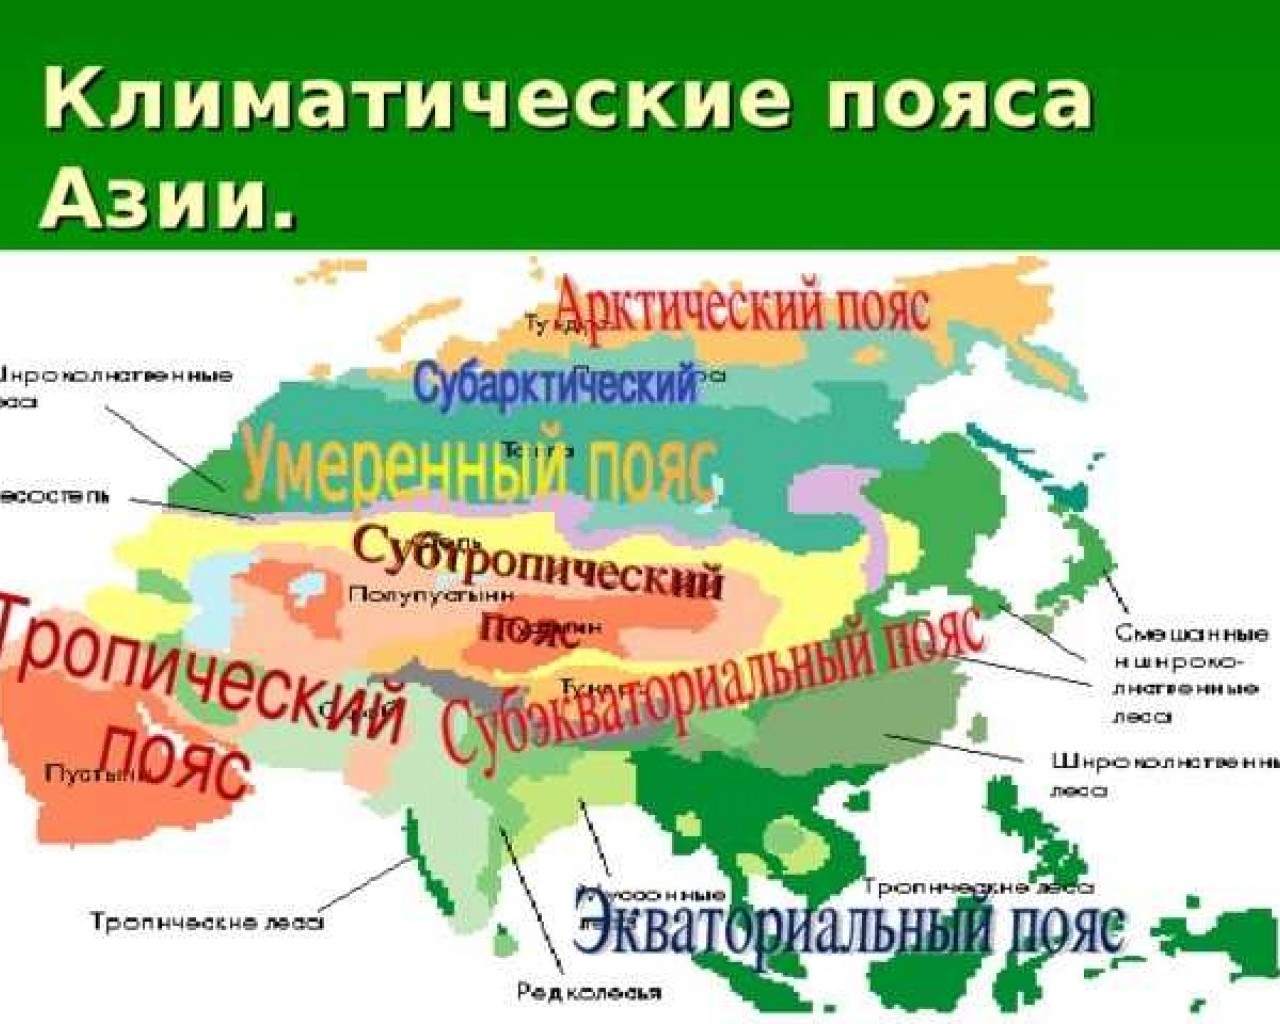 Природные зоны евразии 4 класс. Центральная Азия карта климатические пояса. Карта климат поясов Евразии. Климатические пояса Юго Восточной Азии. Карта климатических поясов Евразии.